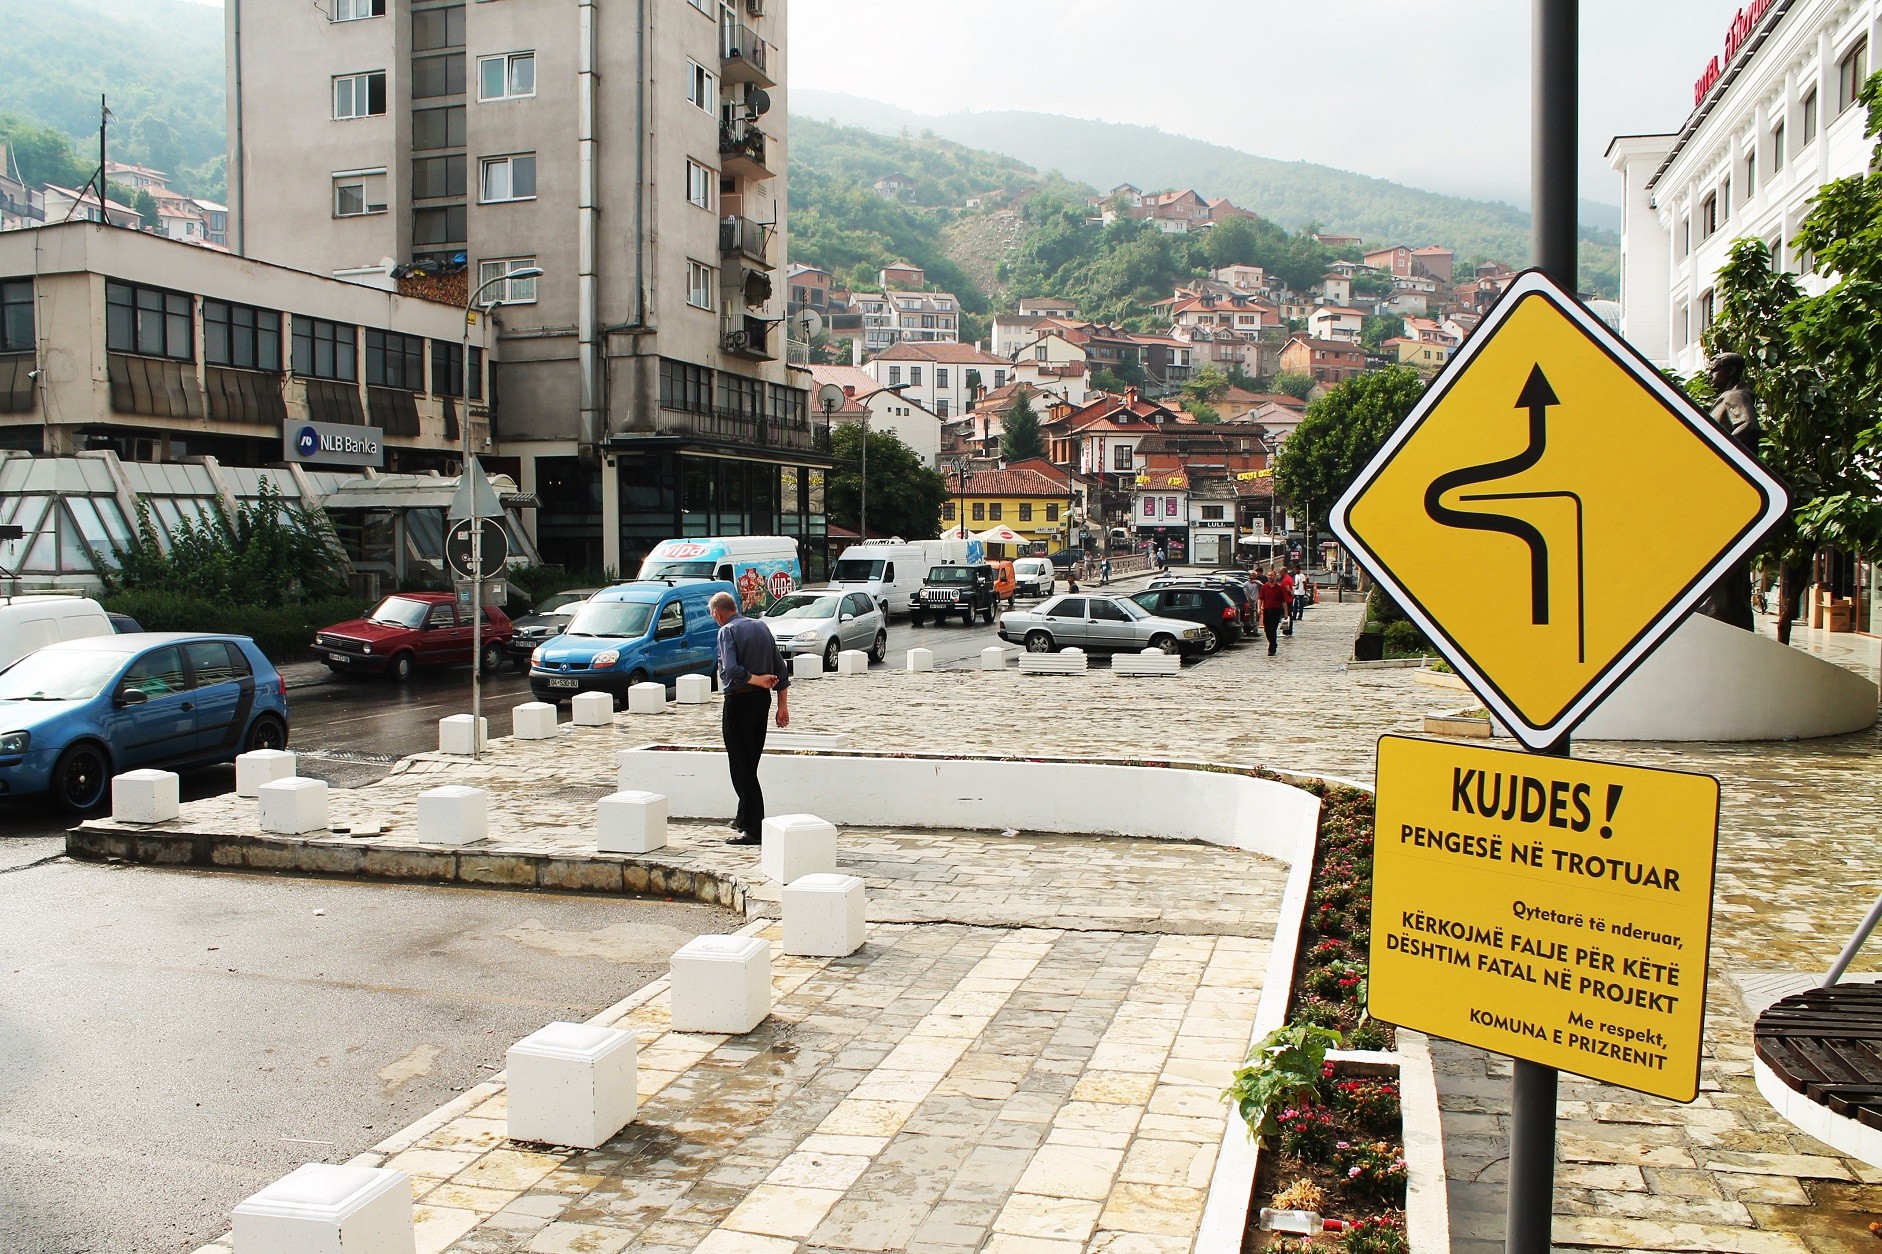 Komuna e Prizrenit ndërton trotuar që pengon lirinë e lëvizjes  